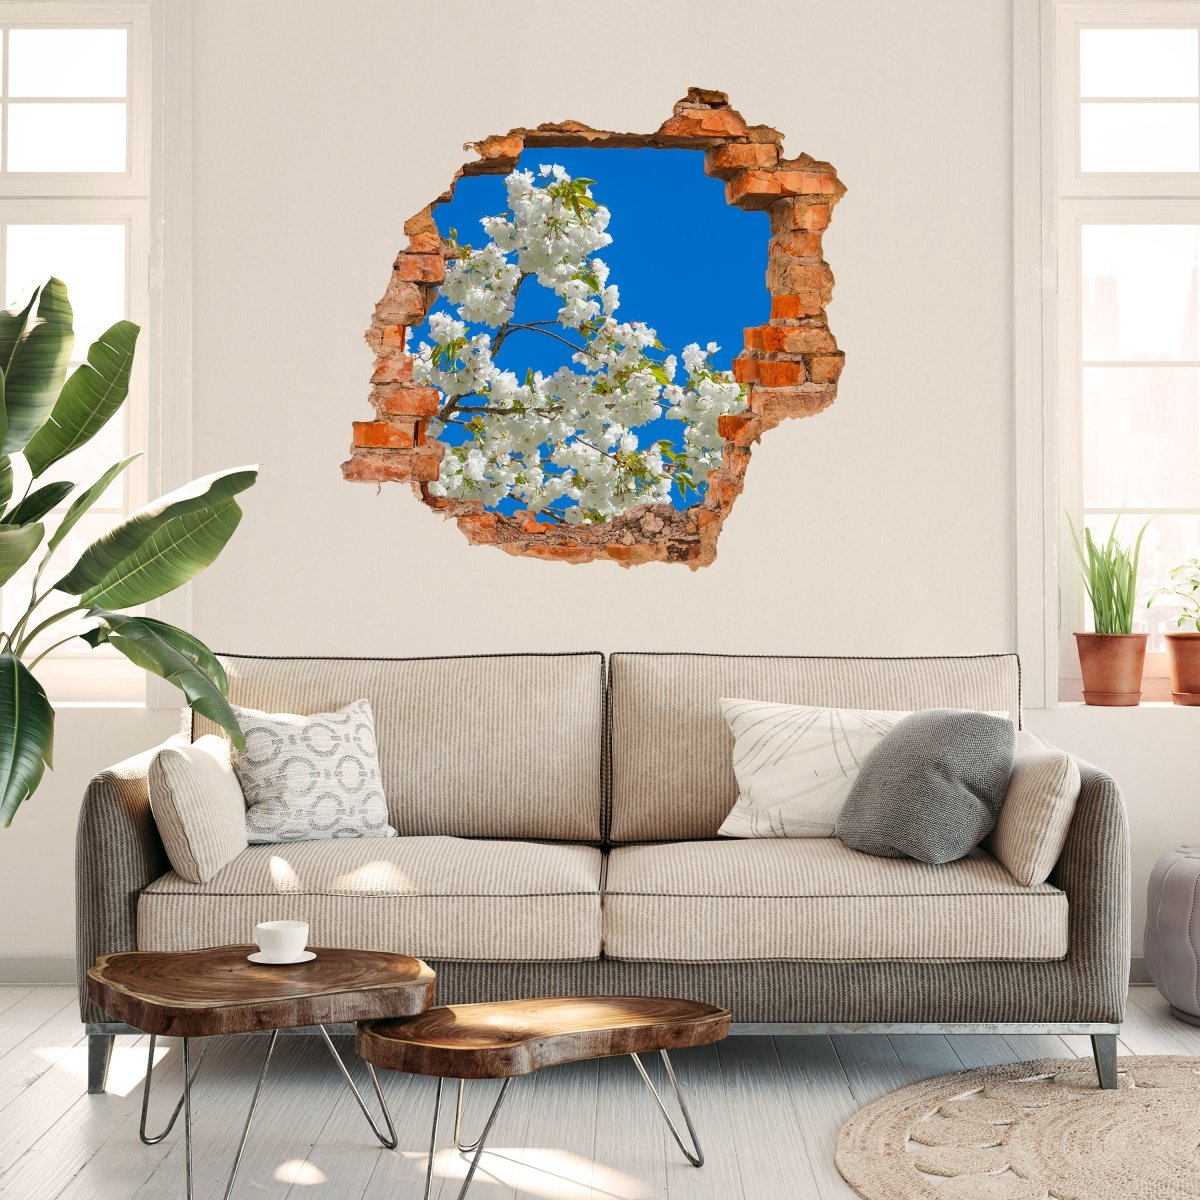 Sticker mural 3D cerisier, fleurs, ciel, cerisier - Wall Decal M1234